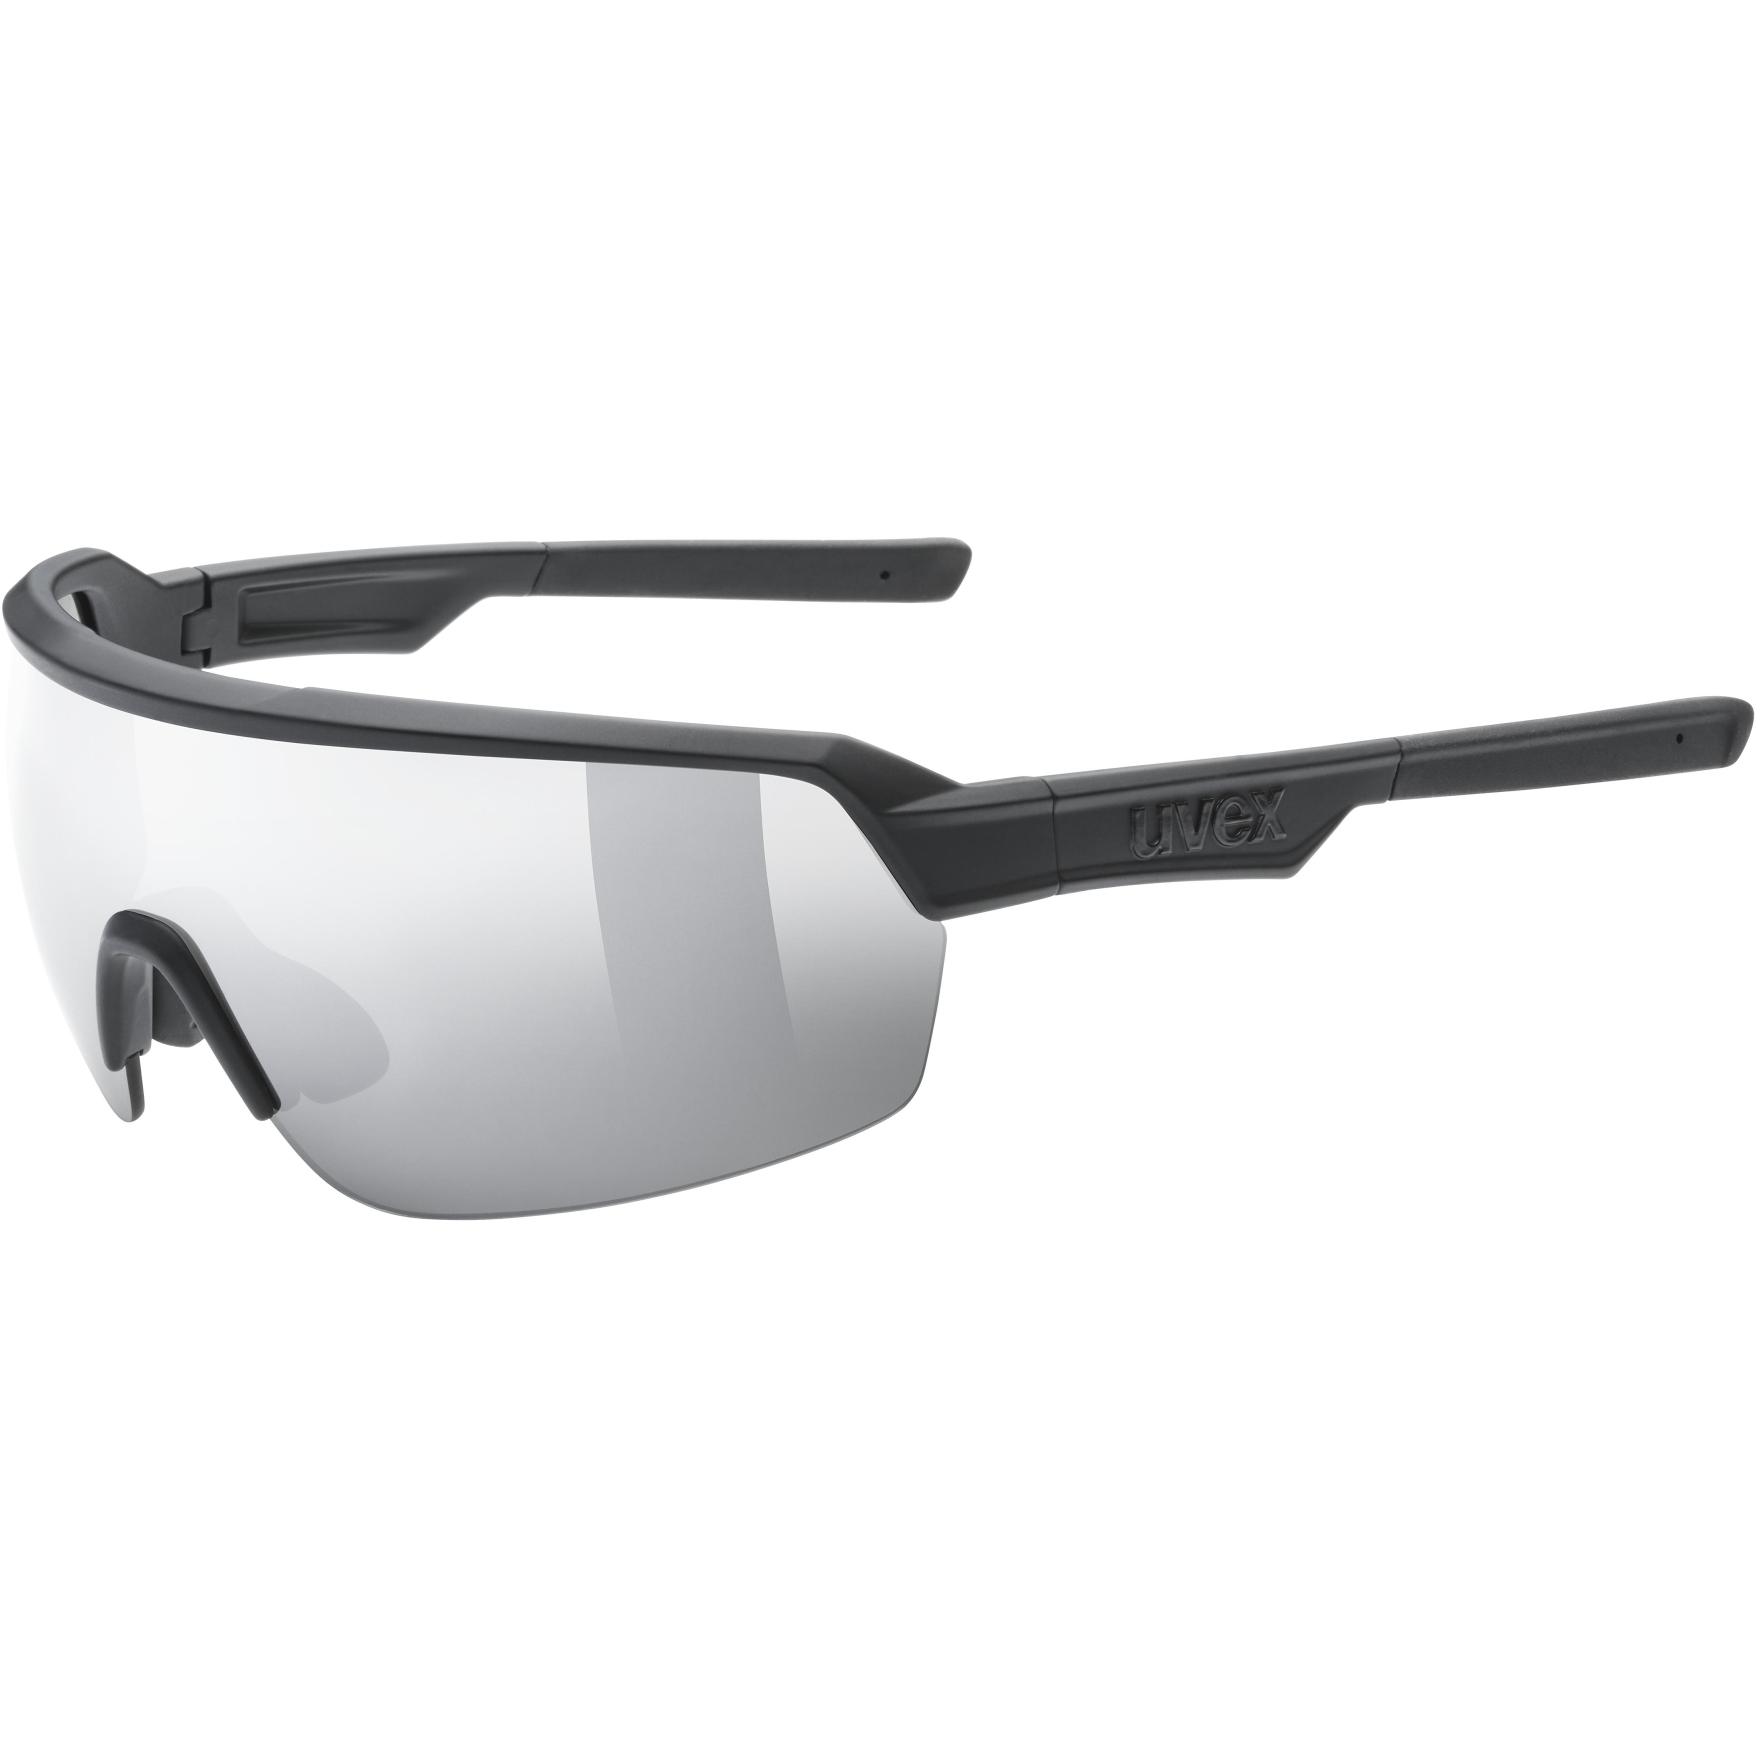 Produktbild von Uvex sportstyle 227 Brille - black mat/mirror silver